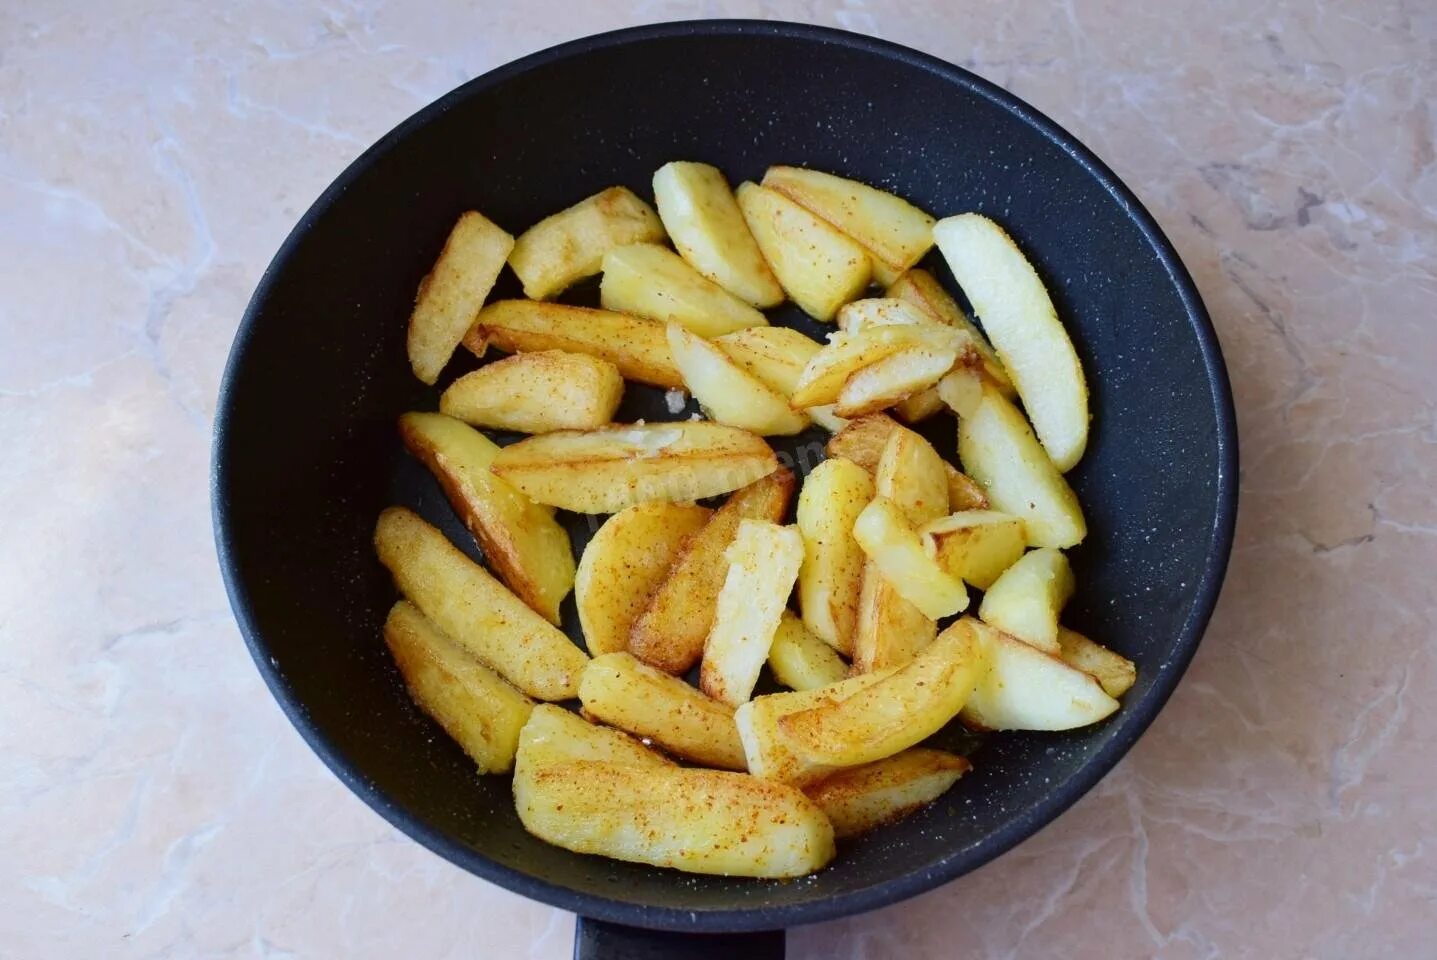 Картошка на сливочном масле на сковороде. Жареный картофель. Круглая картошка на сковороде. Золотистый жареный картофель на сковороде. Картошка обжаренная круглая на сковороде.